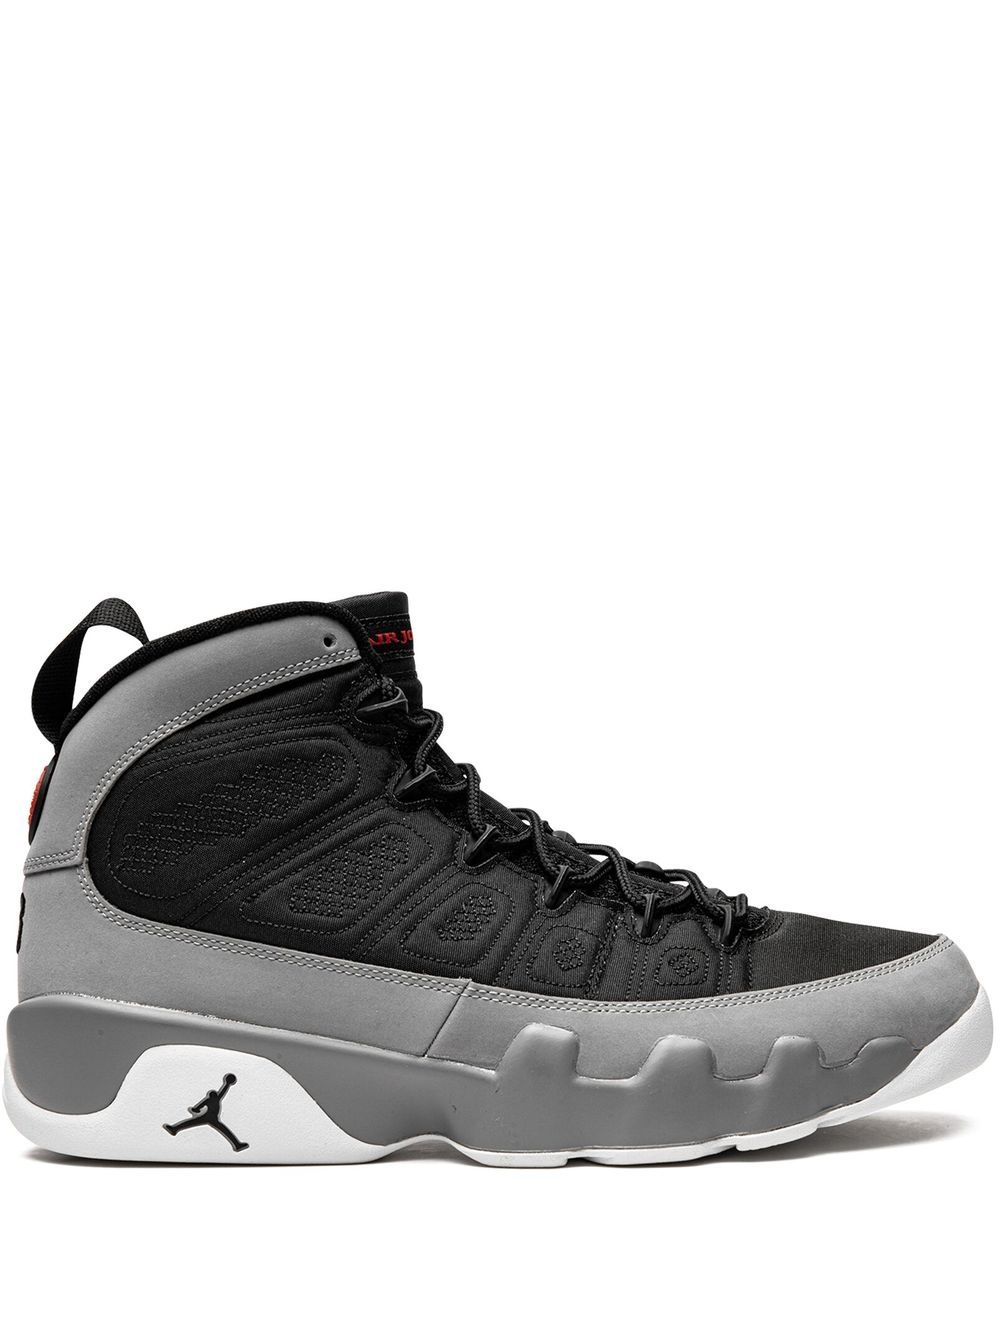 Jordan Air Jordan 9 Retro "Particle Grey" sneakers - Black